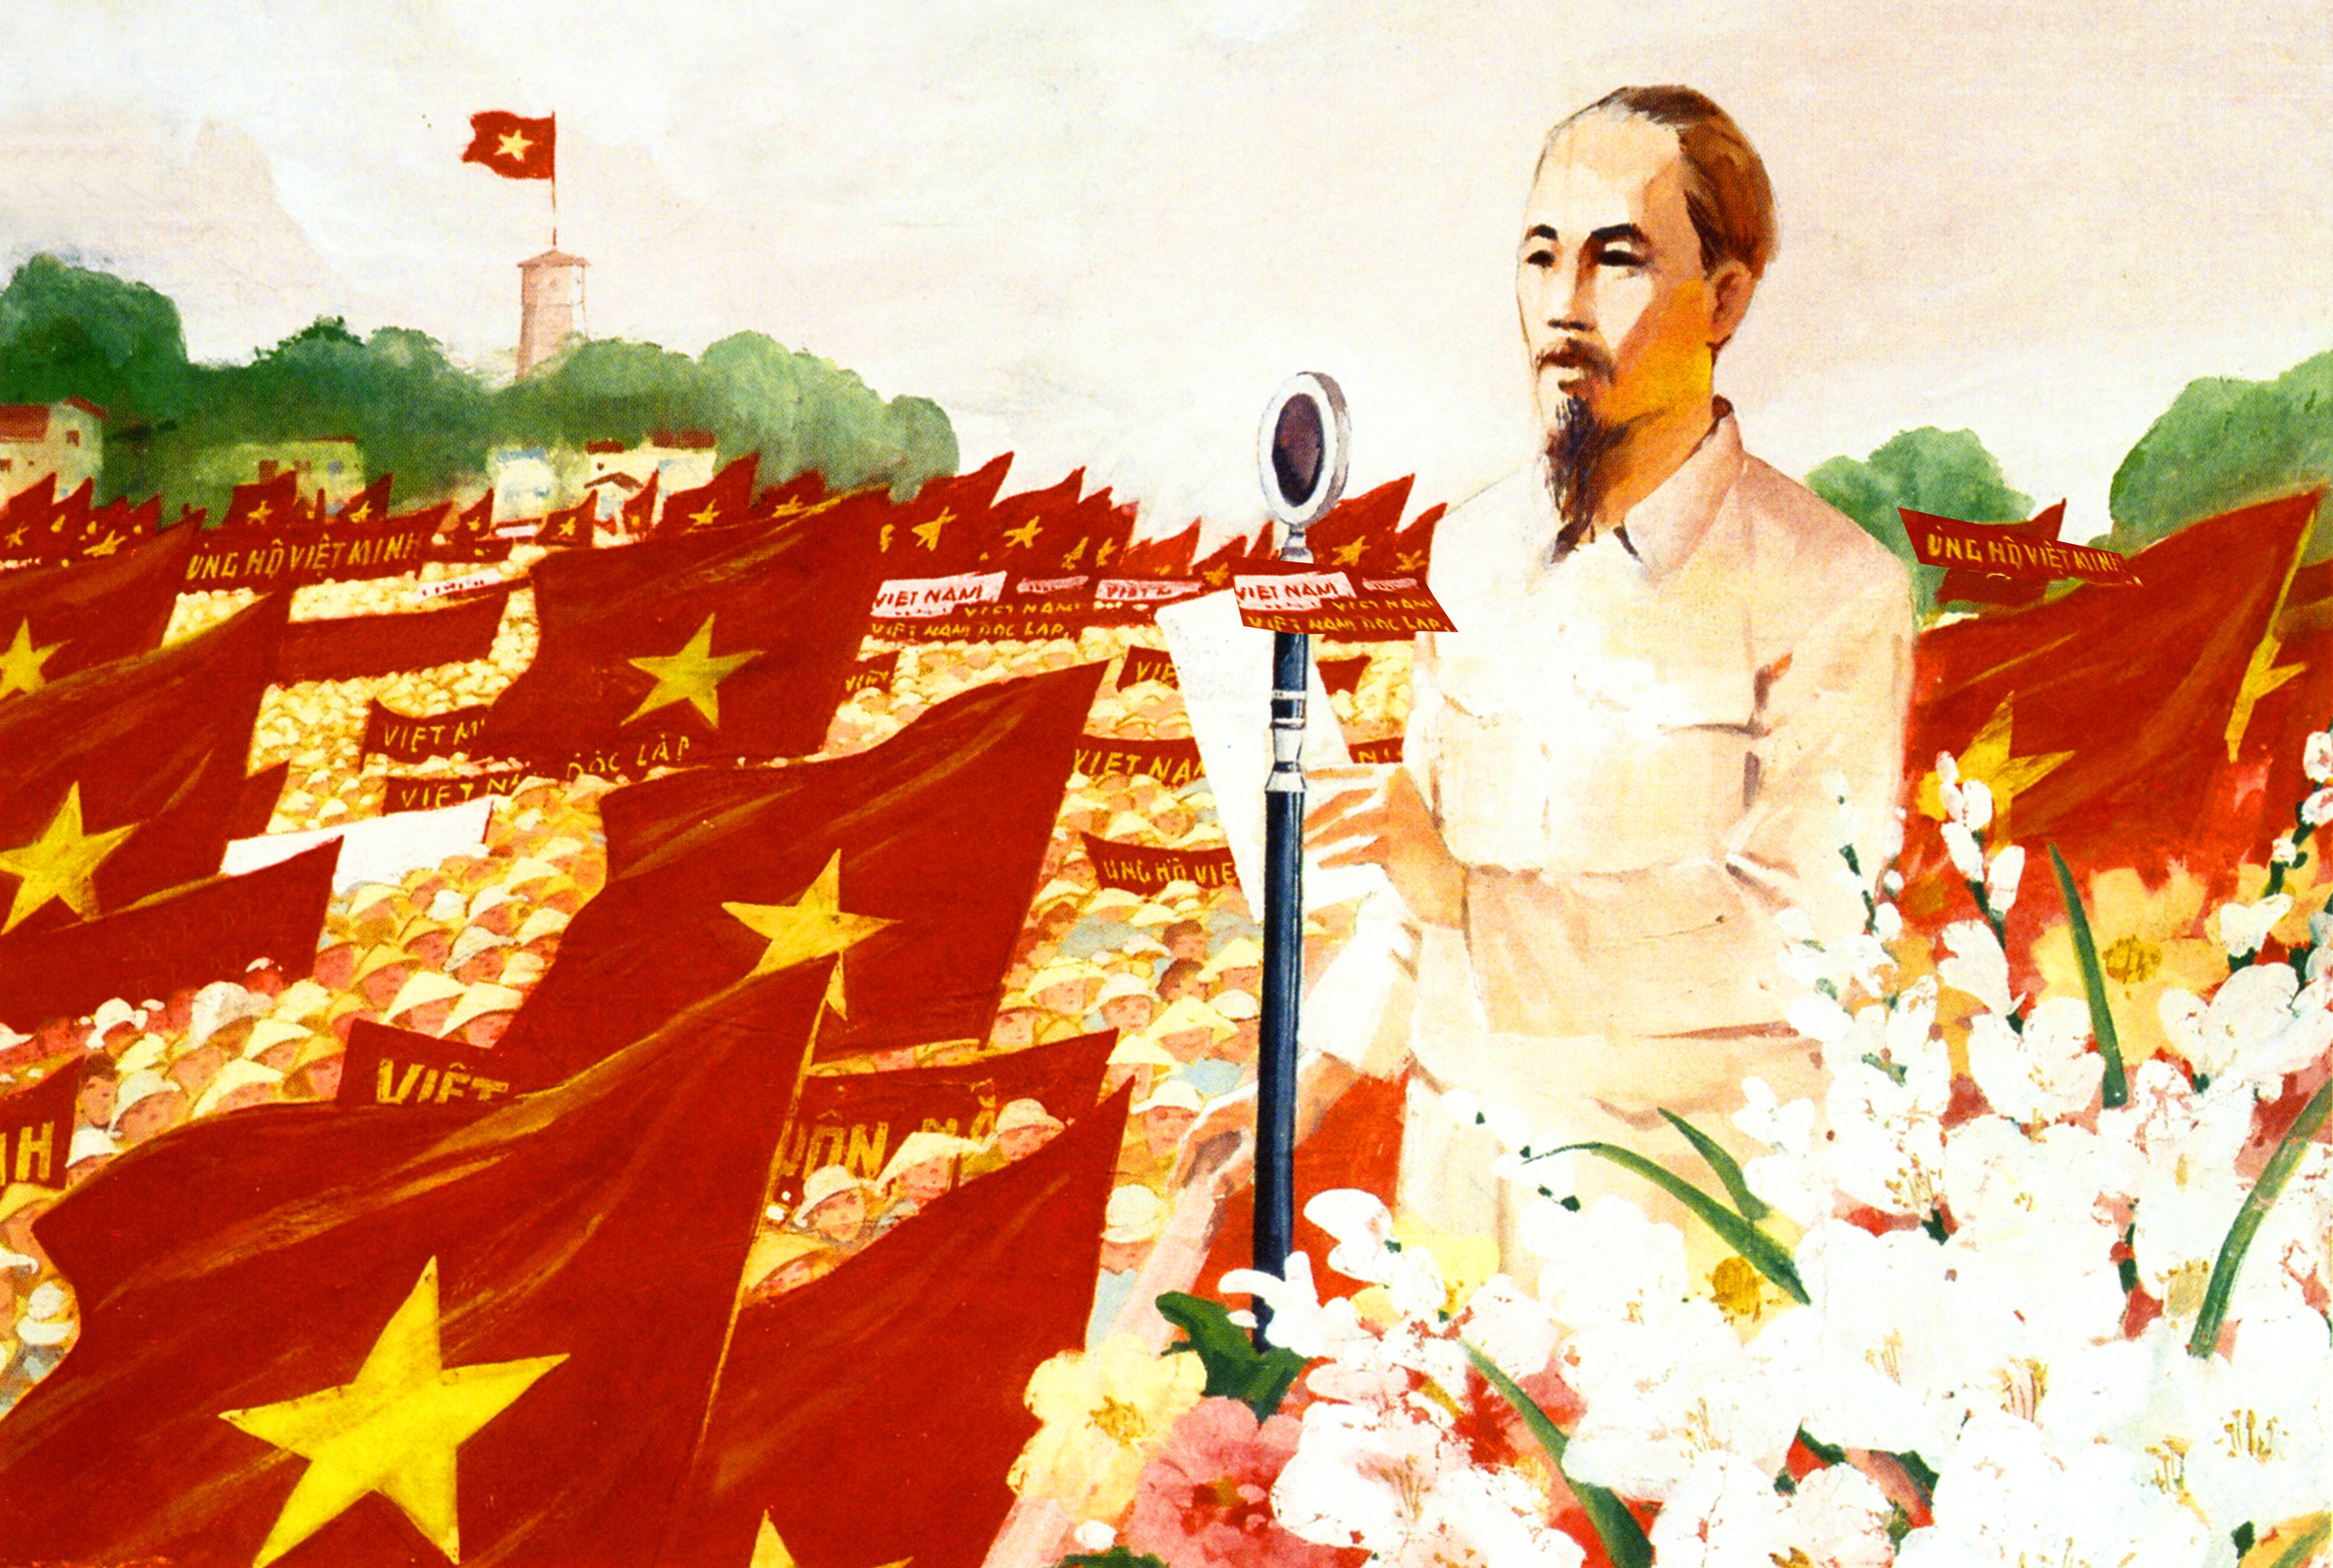 Cách mạng tháng Tám: Cách mạng tháng Tám là ngày lịch sử đầy ý nghĩa của dân tộc Việt Nam, là thời điểm quyết định sự độc lập của đất nước. Hãy cùng khám phá hình ảnh đáng tự hào và cảm động của ngày 19/8/1945 - ngày khởi đầu cho sự phát triển vĩ đại của Việt Nam.